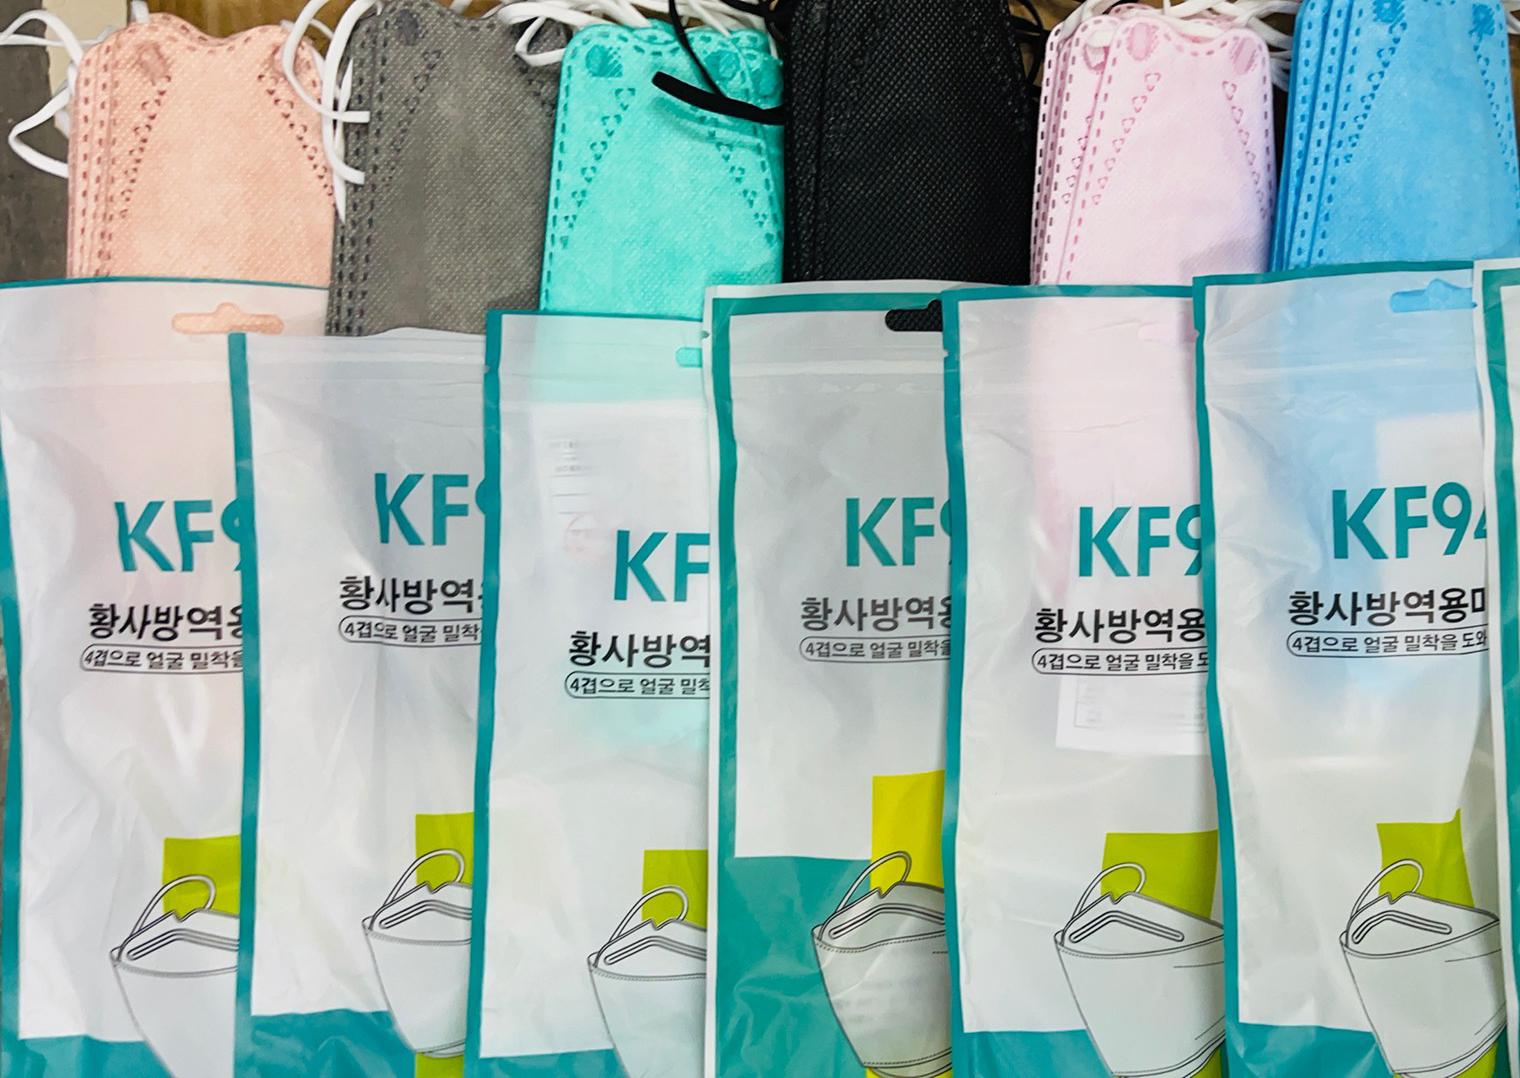 ⚡ ขายดีมาก ส่งของทุกวัน  แมสเกาหลี ซอง4D รุ่นใหม่ KF94 [แพค 10 ชิ้น] pm2.5 หน้ากากอนามัย 4D พร้อมส่งที่ไทย มีสินค้าหลายสีงานตรงปกเว่อร์